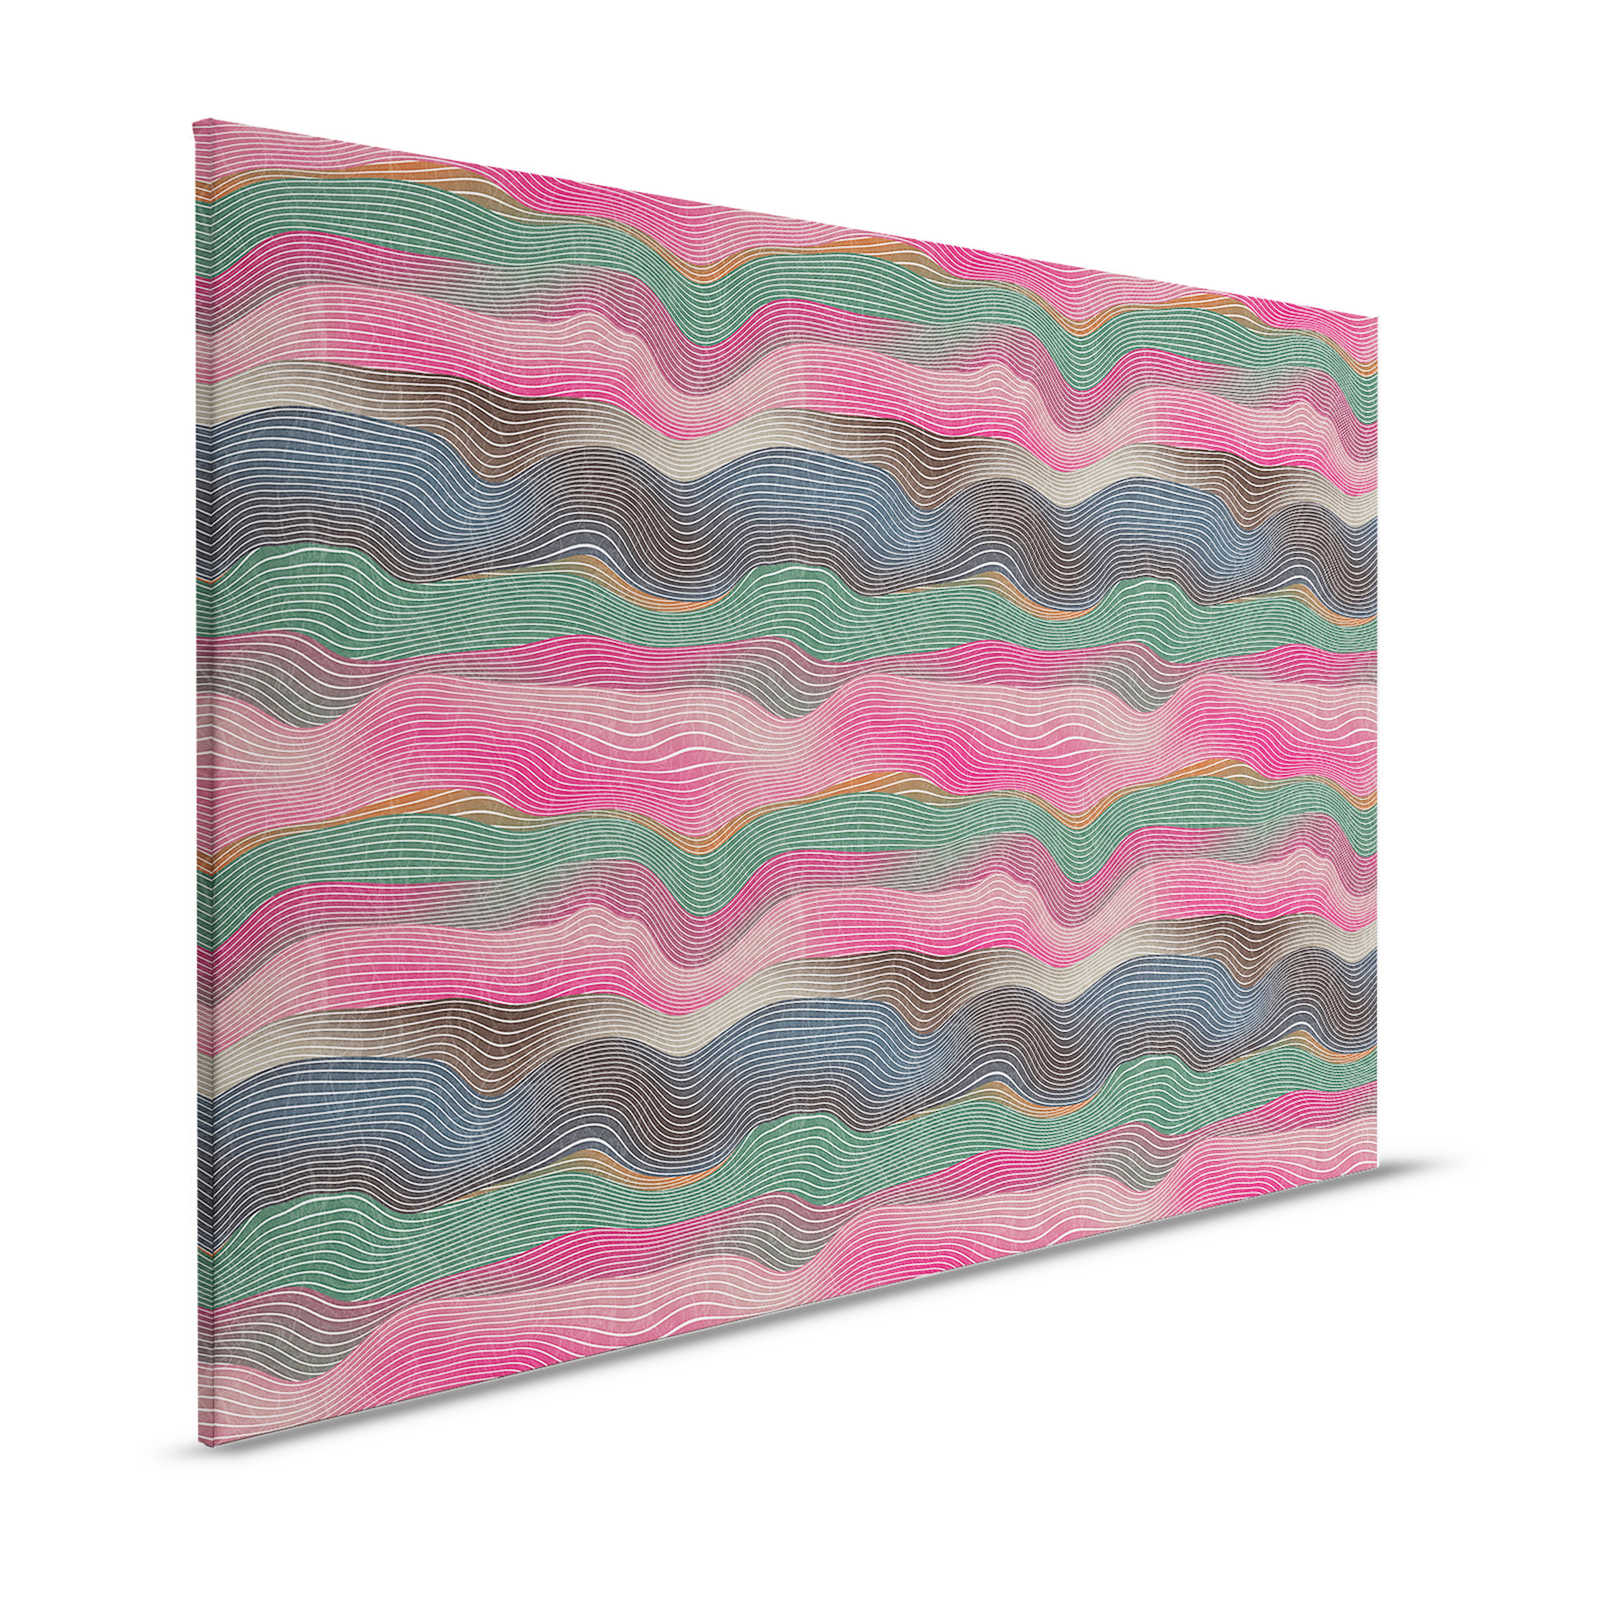 Spazio 1 - Quadro su tela con motivo a onde rosa e verde in stile retrò - 1,20 m x 0,80 m
